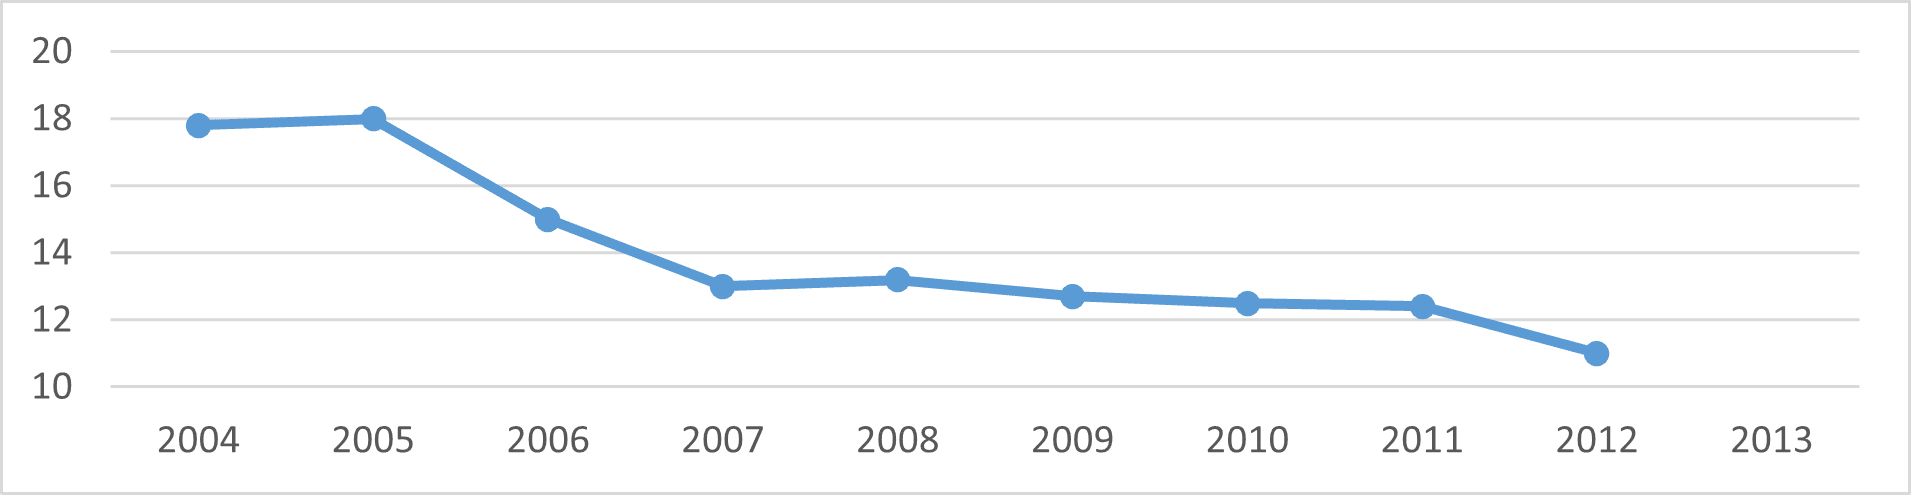 معدلات الفقر في روسيا (2004 -2012) النسبة المئوية